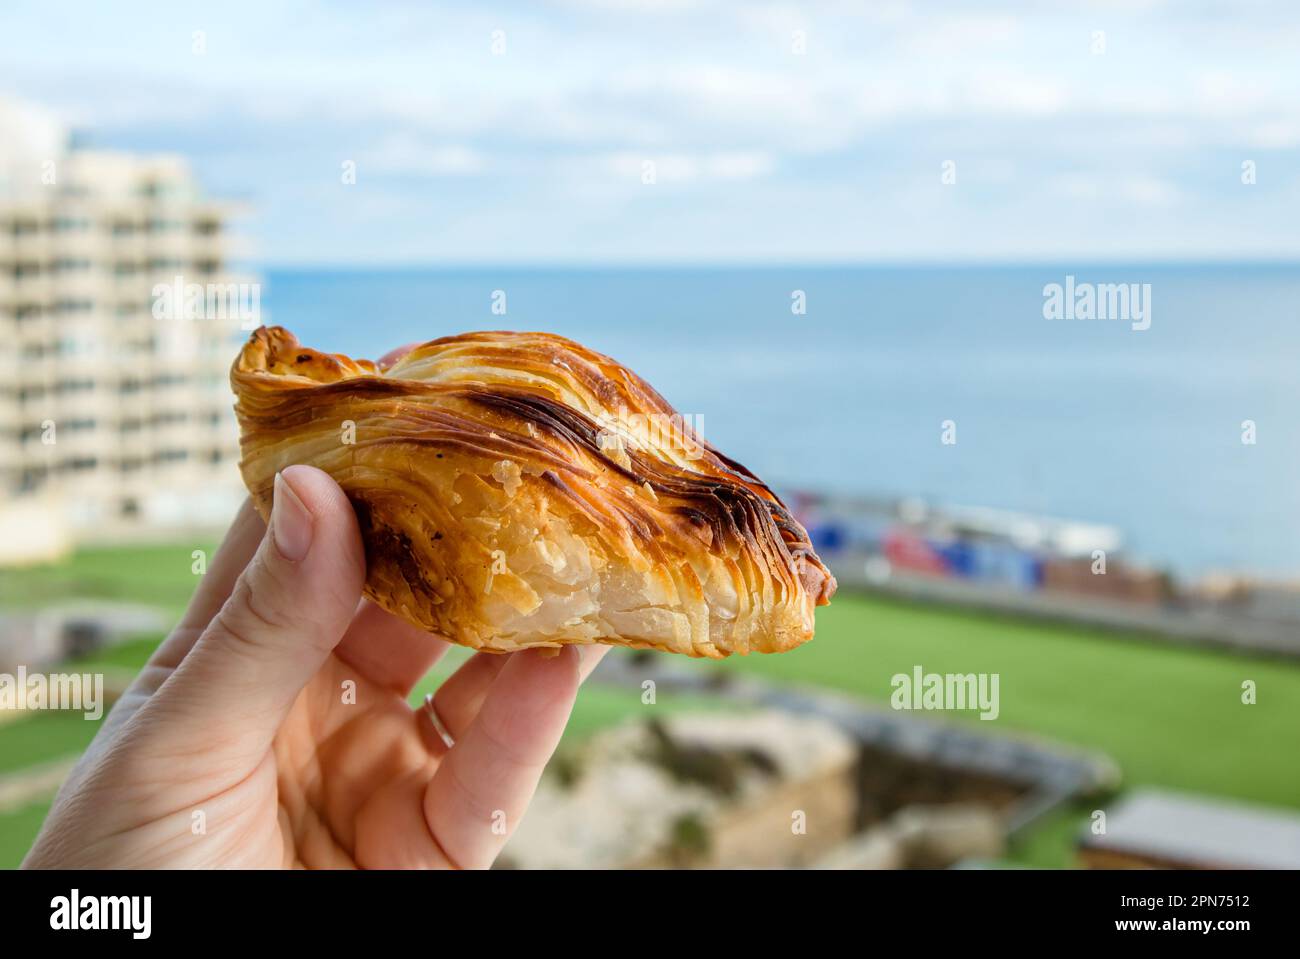 Lokales maltesisches Essen namens Pastizz oder Pastizzi. Person hält rautenförmigen kleinen Kuchen mit Malta Sliema Stadt auf dem Hintergrund mit blauem Himmel und Meer Stockfoto